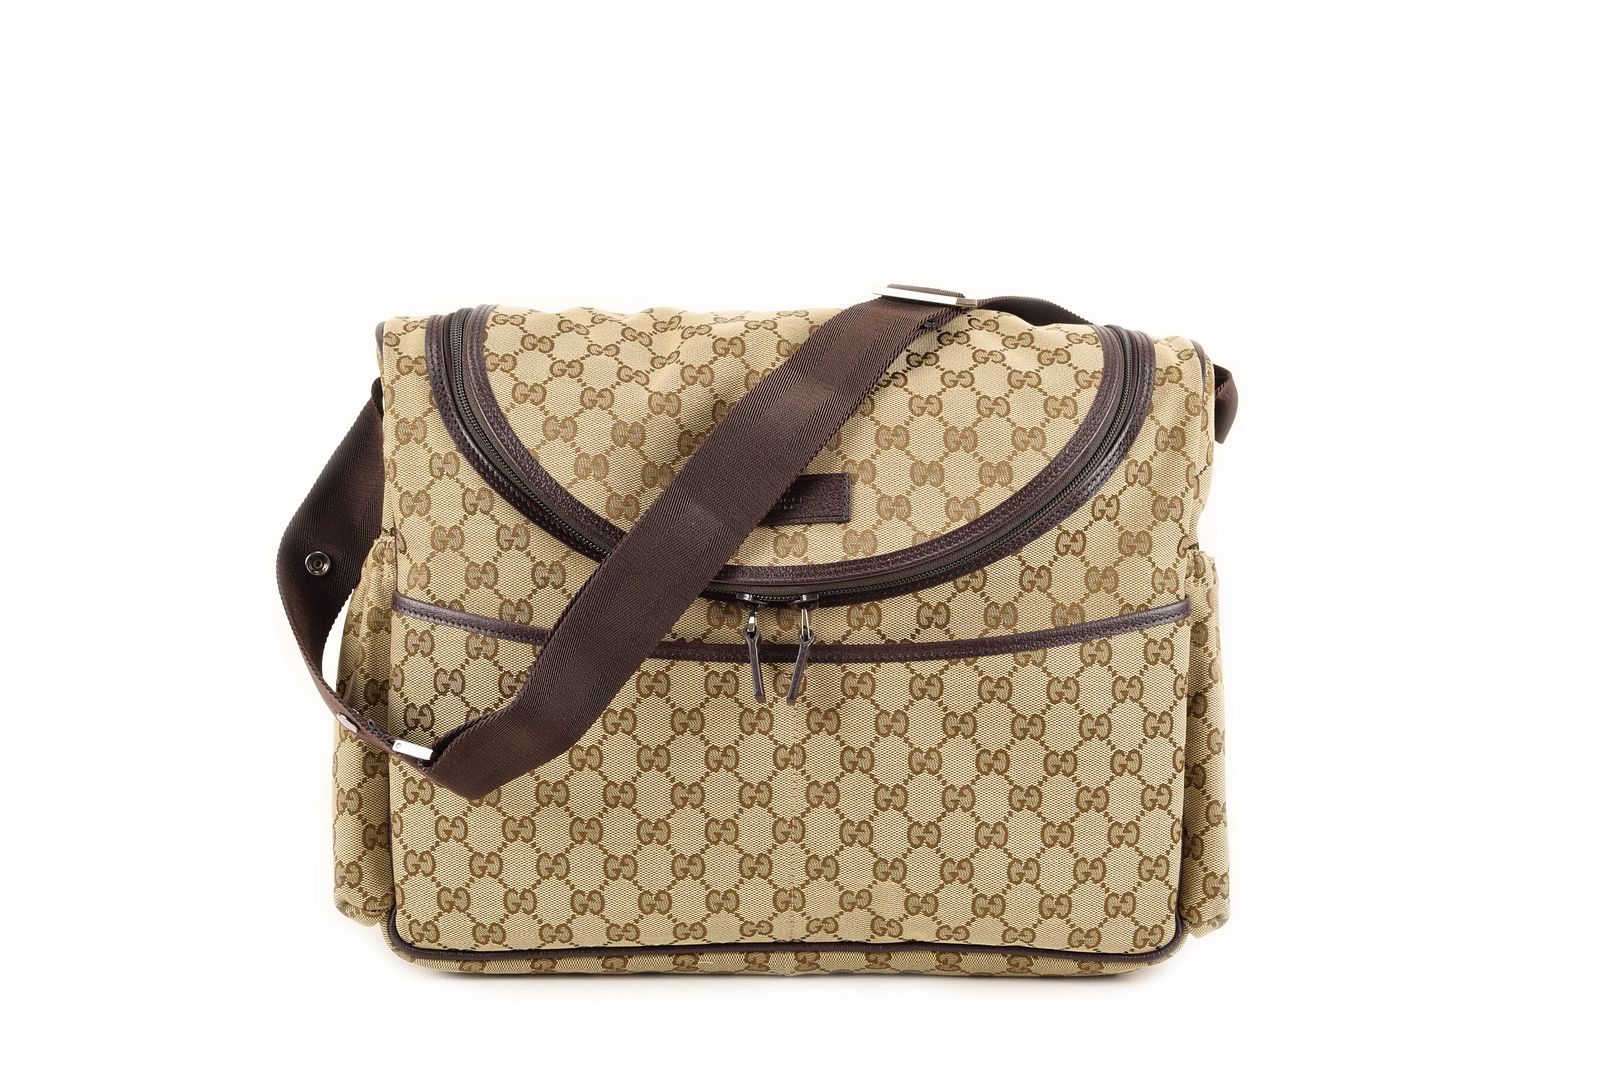 Gucci GG Supreme Canvas Diaper Bag | eBay